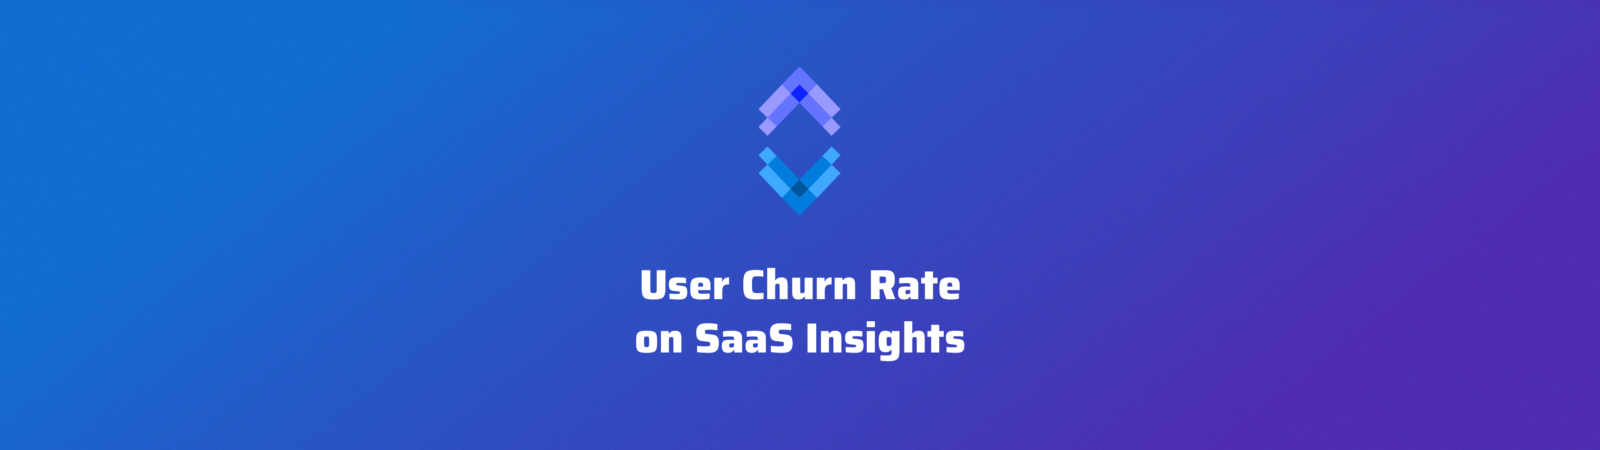 user churn rate